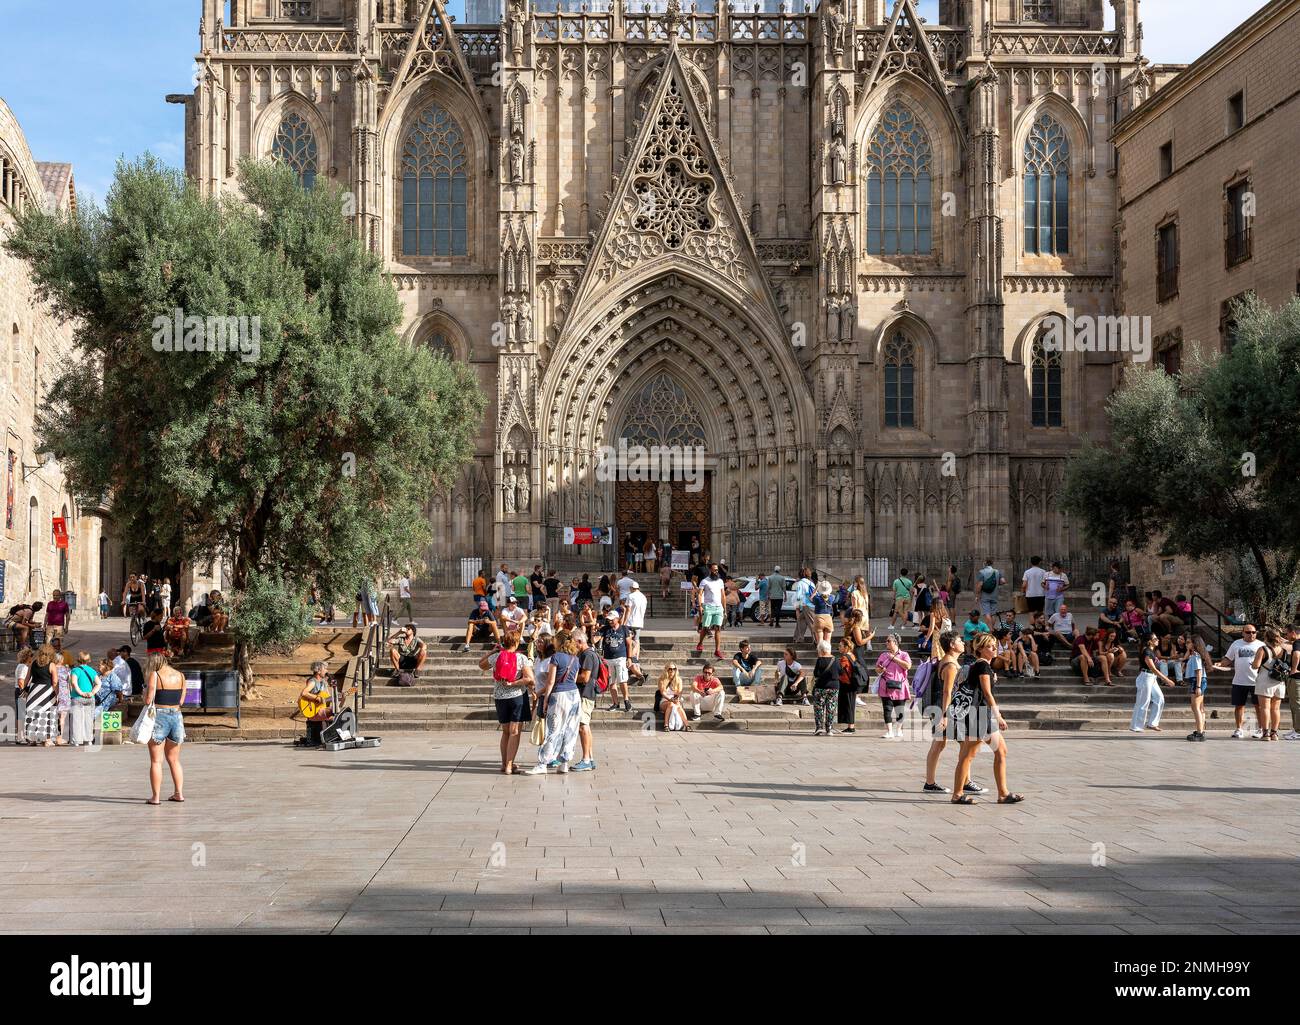 La Catedral de la Santa Creu in the Barri Gotic district, Barcelona, Catalonia, Spain Stock Photo